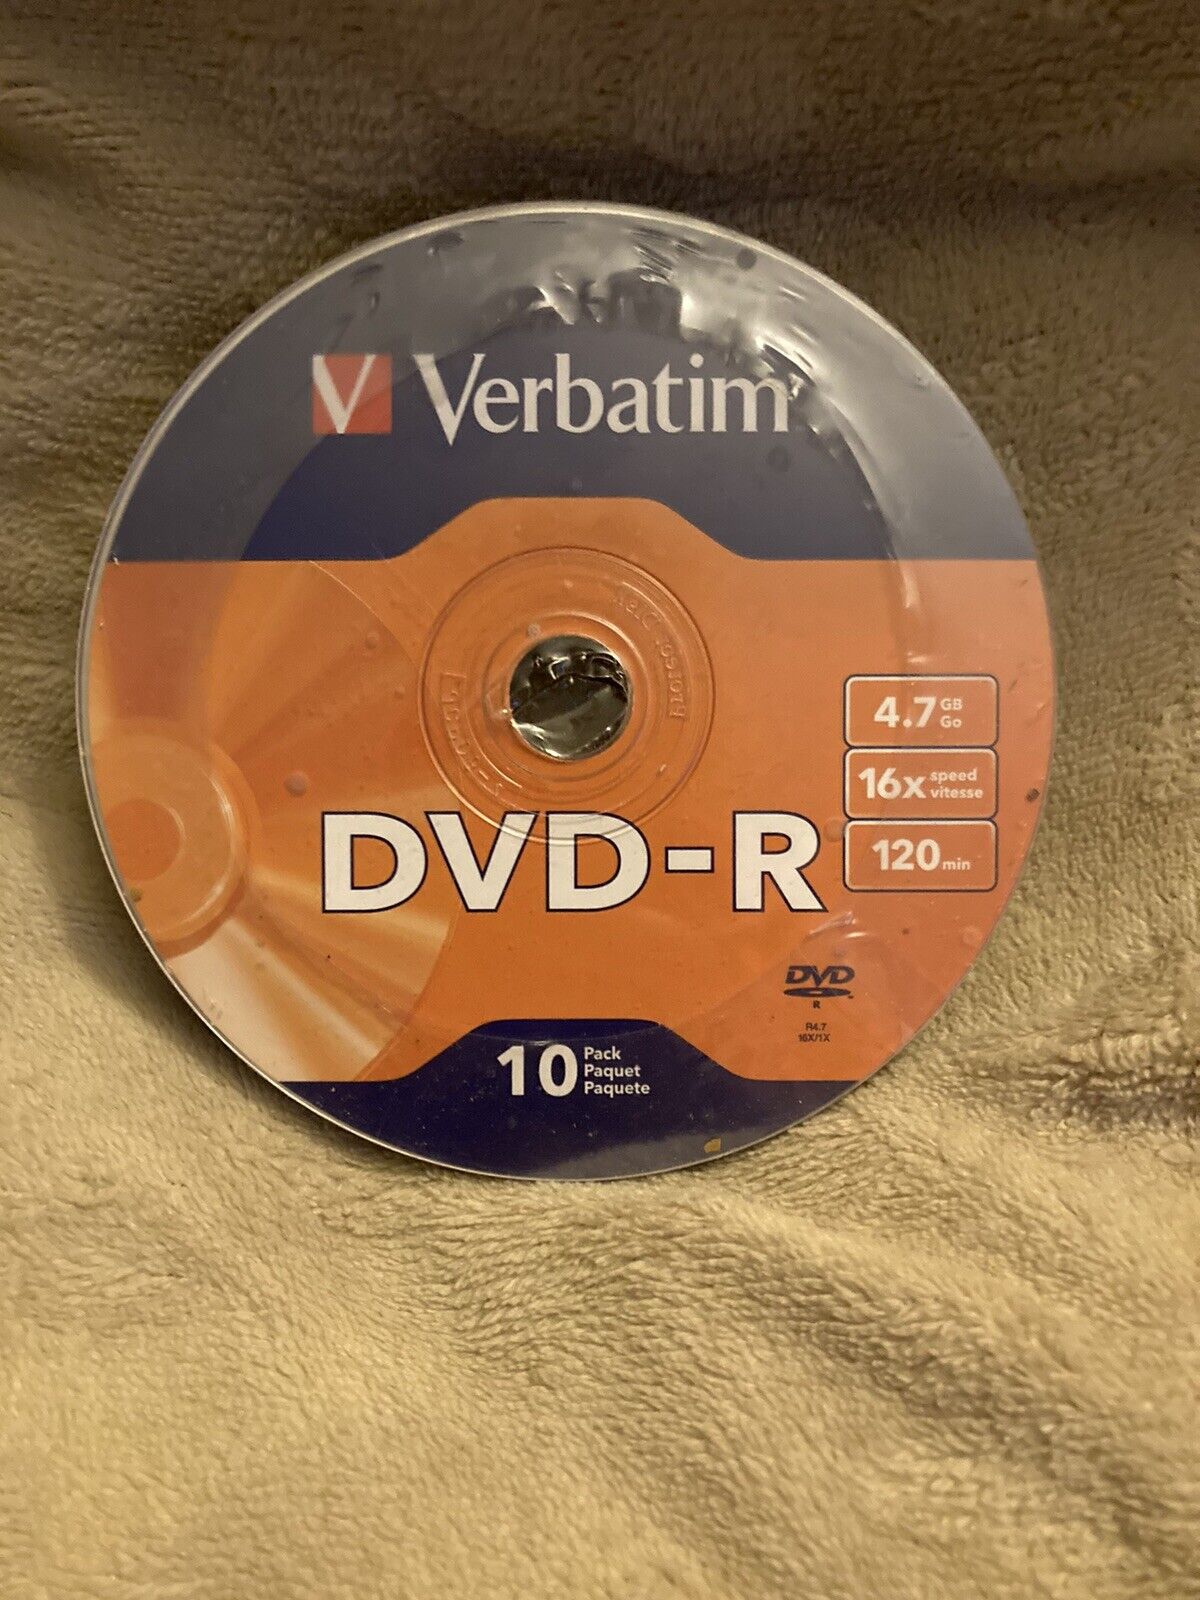 Blank Verbatim Disks 16x DVD-R Discs 120 min 4.7 GB 10 Pack New Sealed